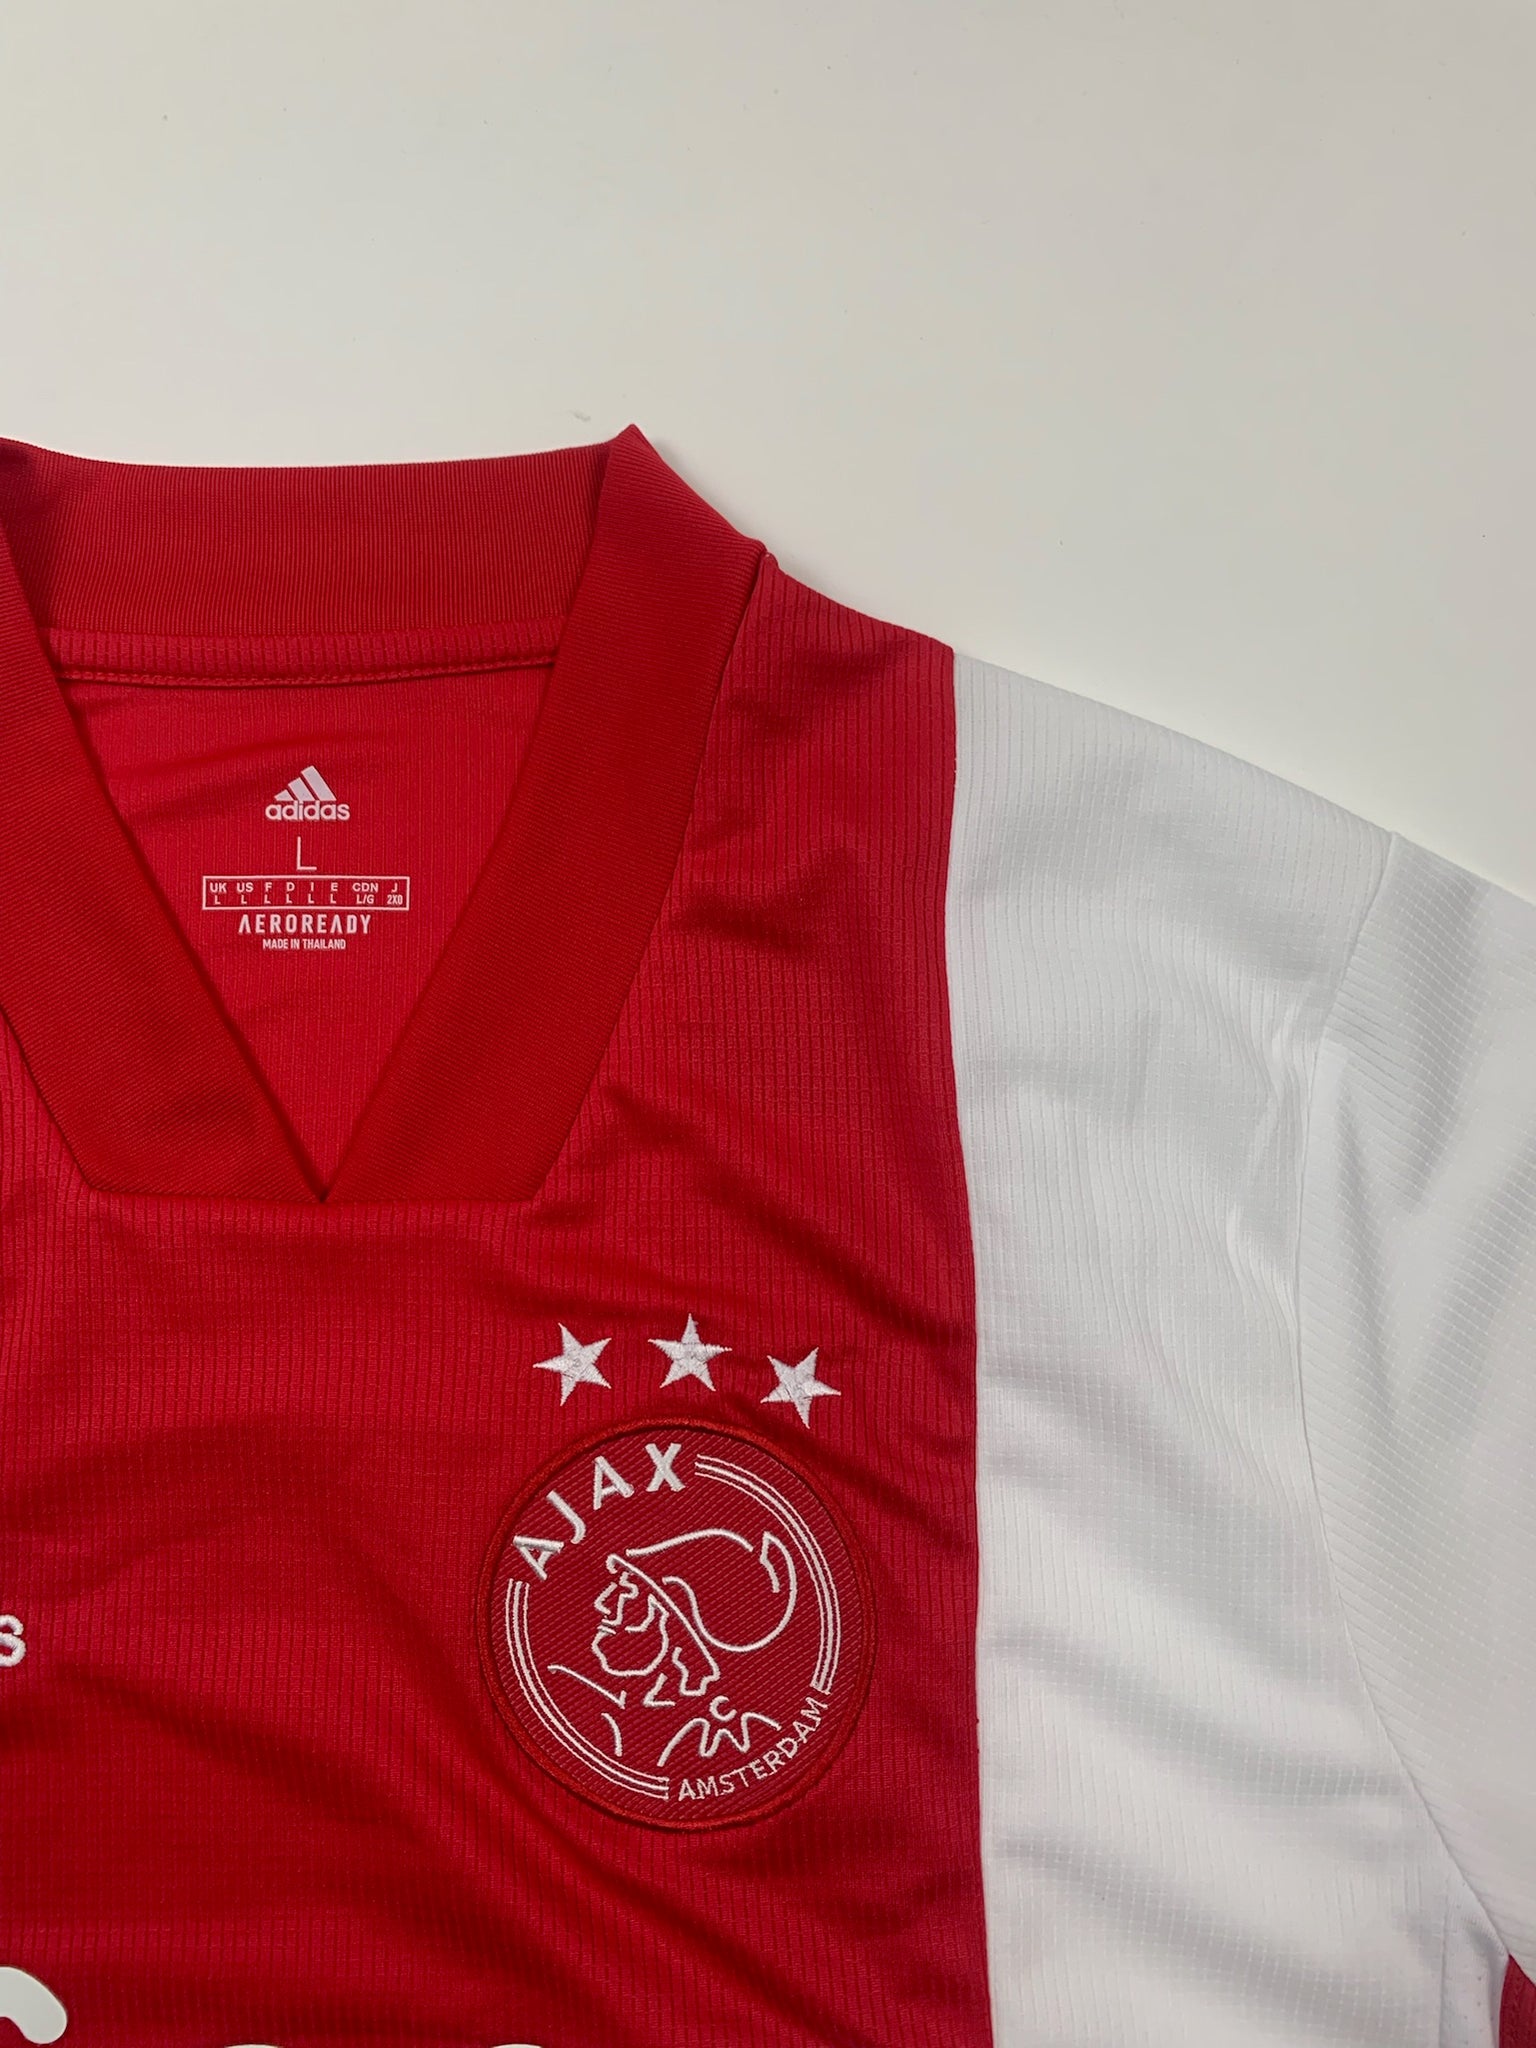 Adidas Ajax Amsterdam Jersey (L)